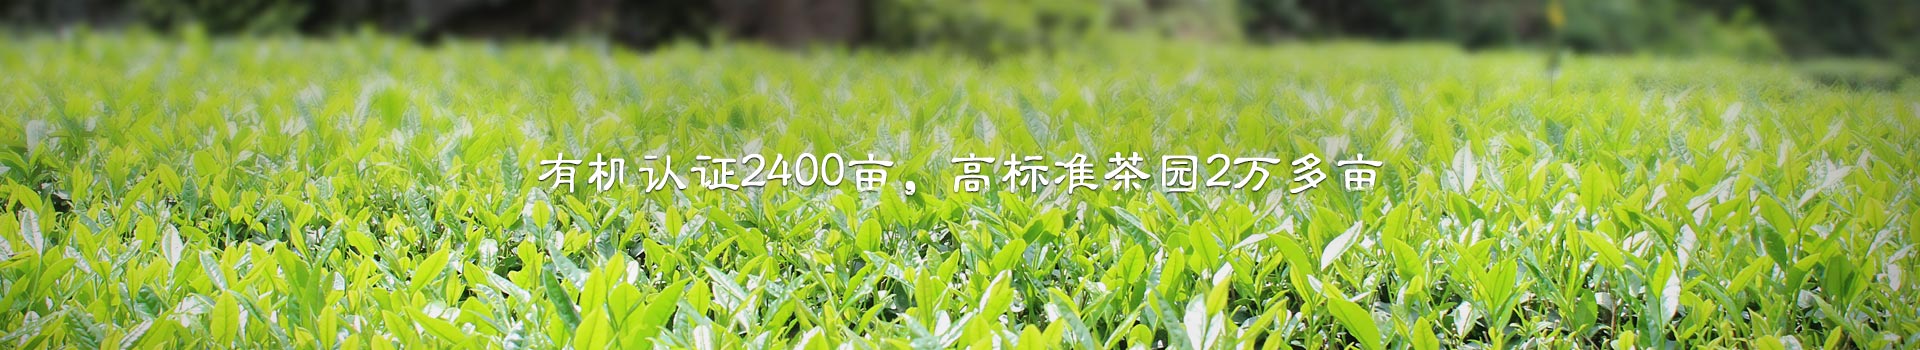 润麟茶业,有机认证2400亩,高标准茶园2万多亩